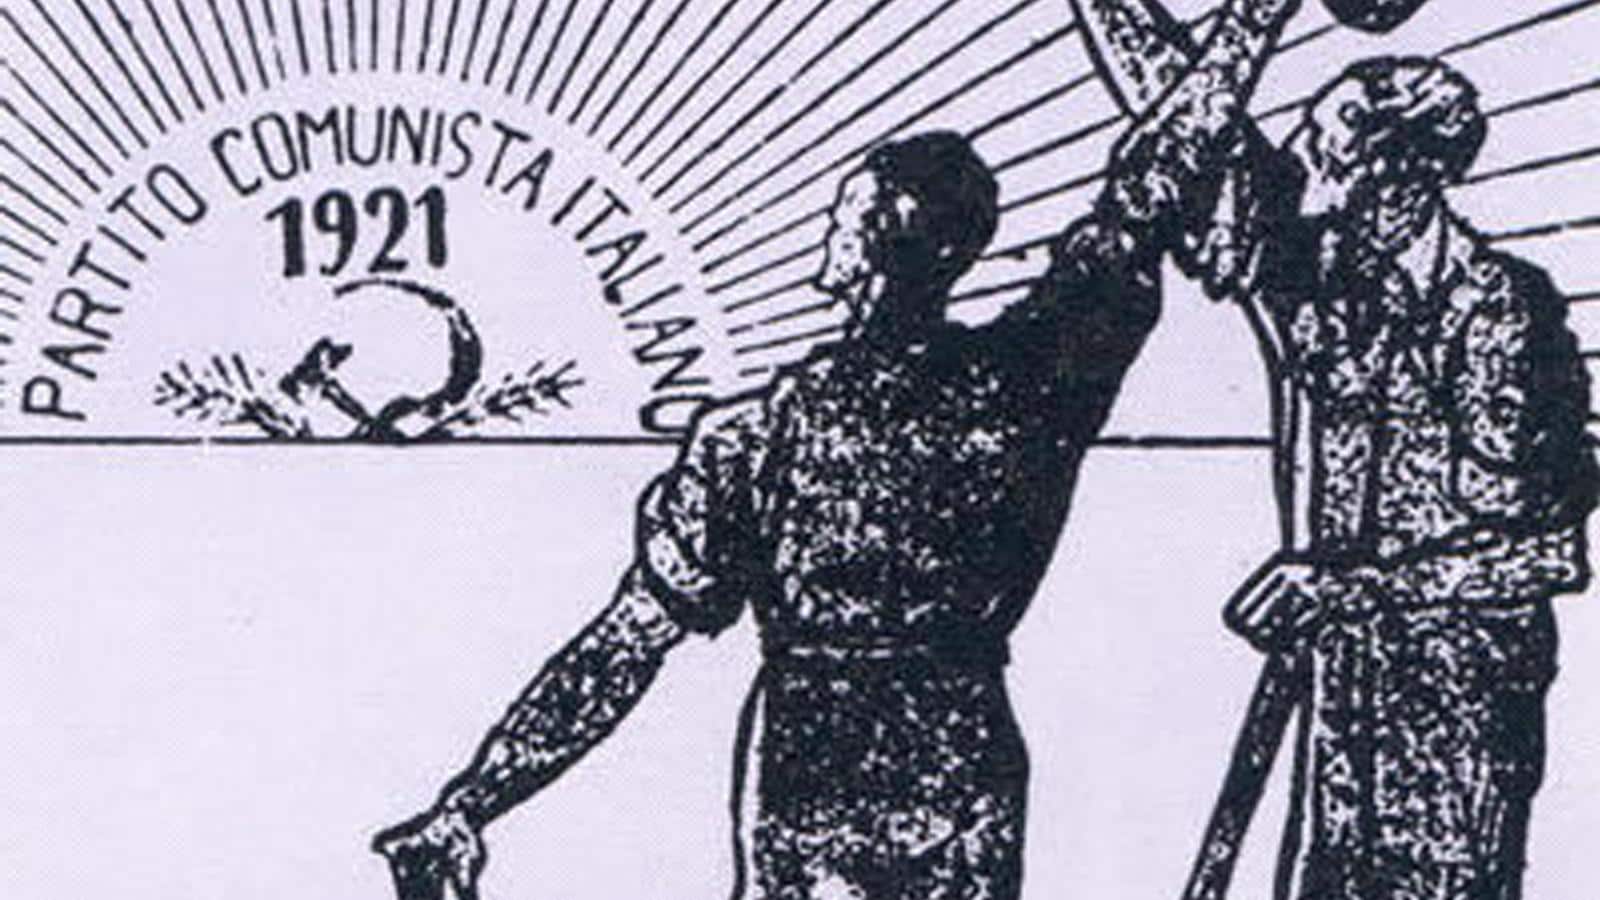 Livorno 1921, ricordando la fondazione del Pci: "il comunismo è un ideale